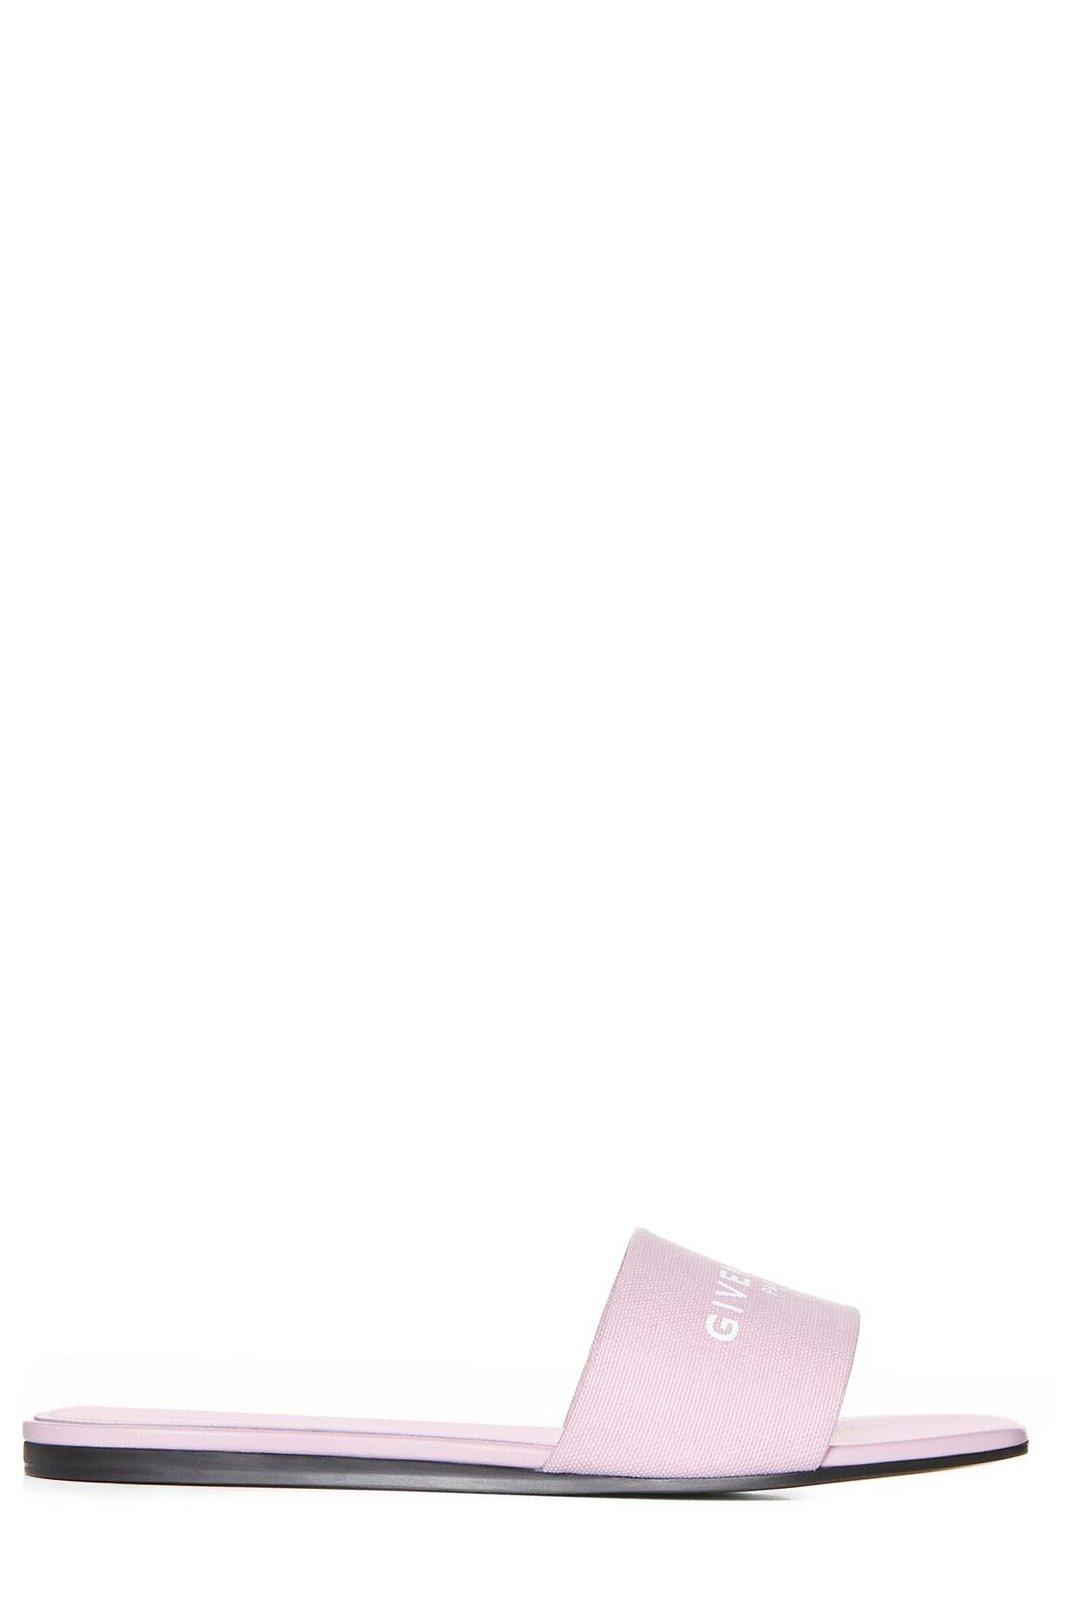 Givenchy Logo Printed Slides